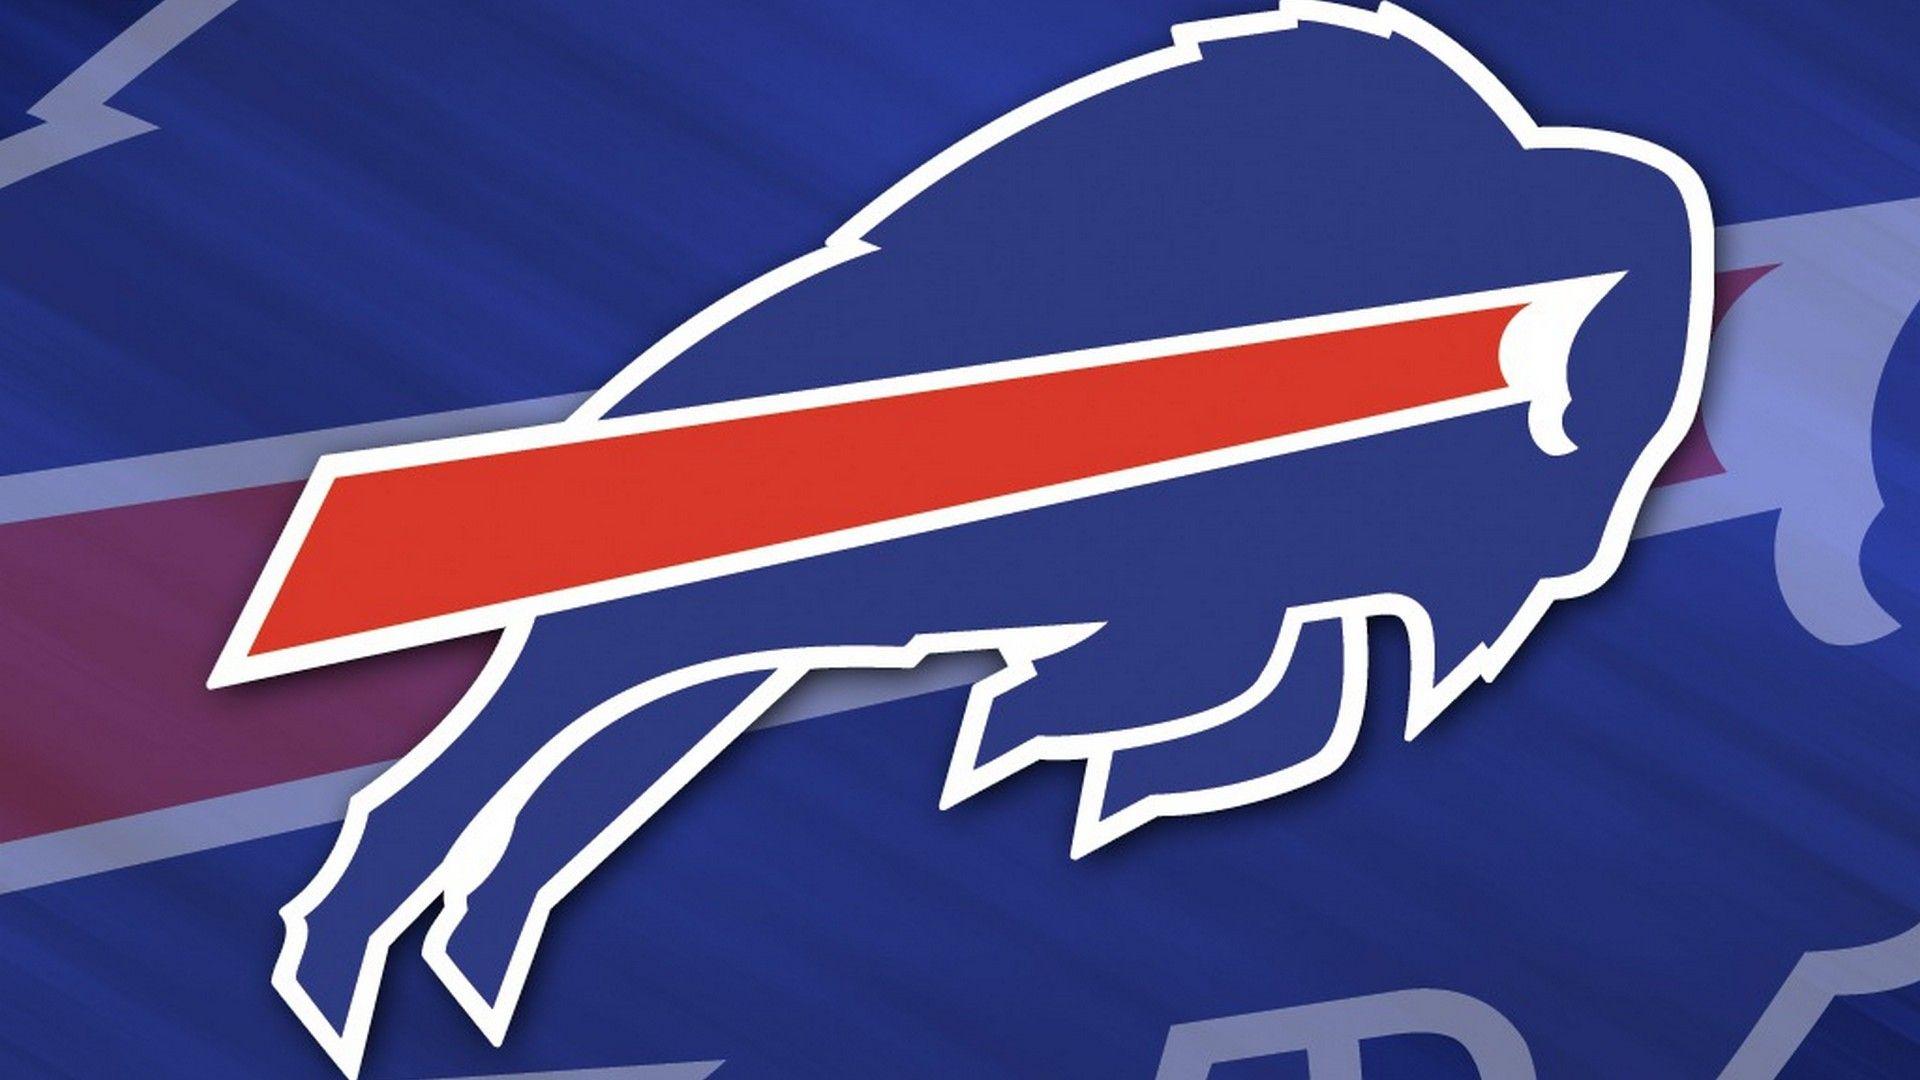 Buffalo Bills Desktop Wallpaper. Buffalo bills, Football